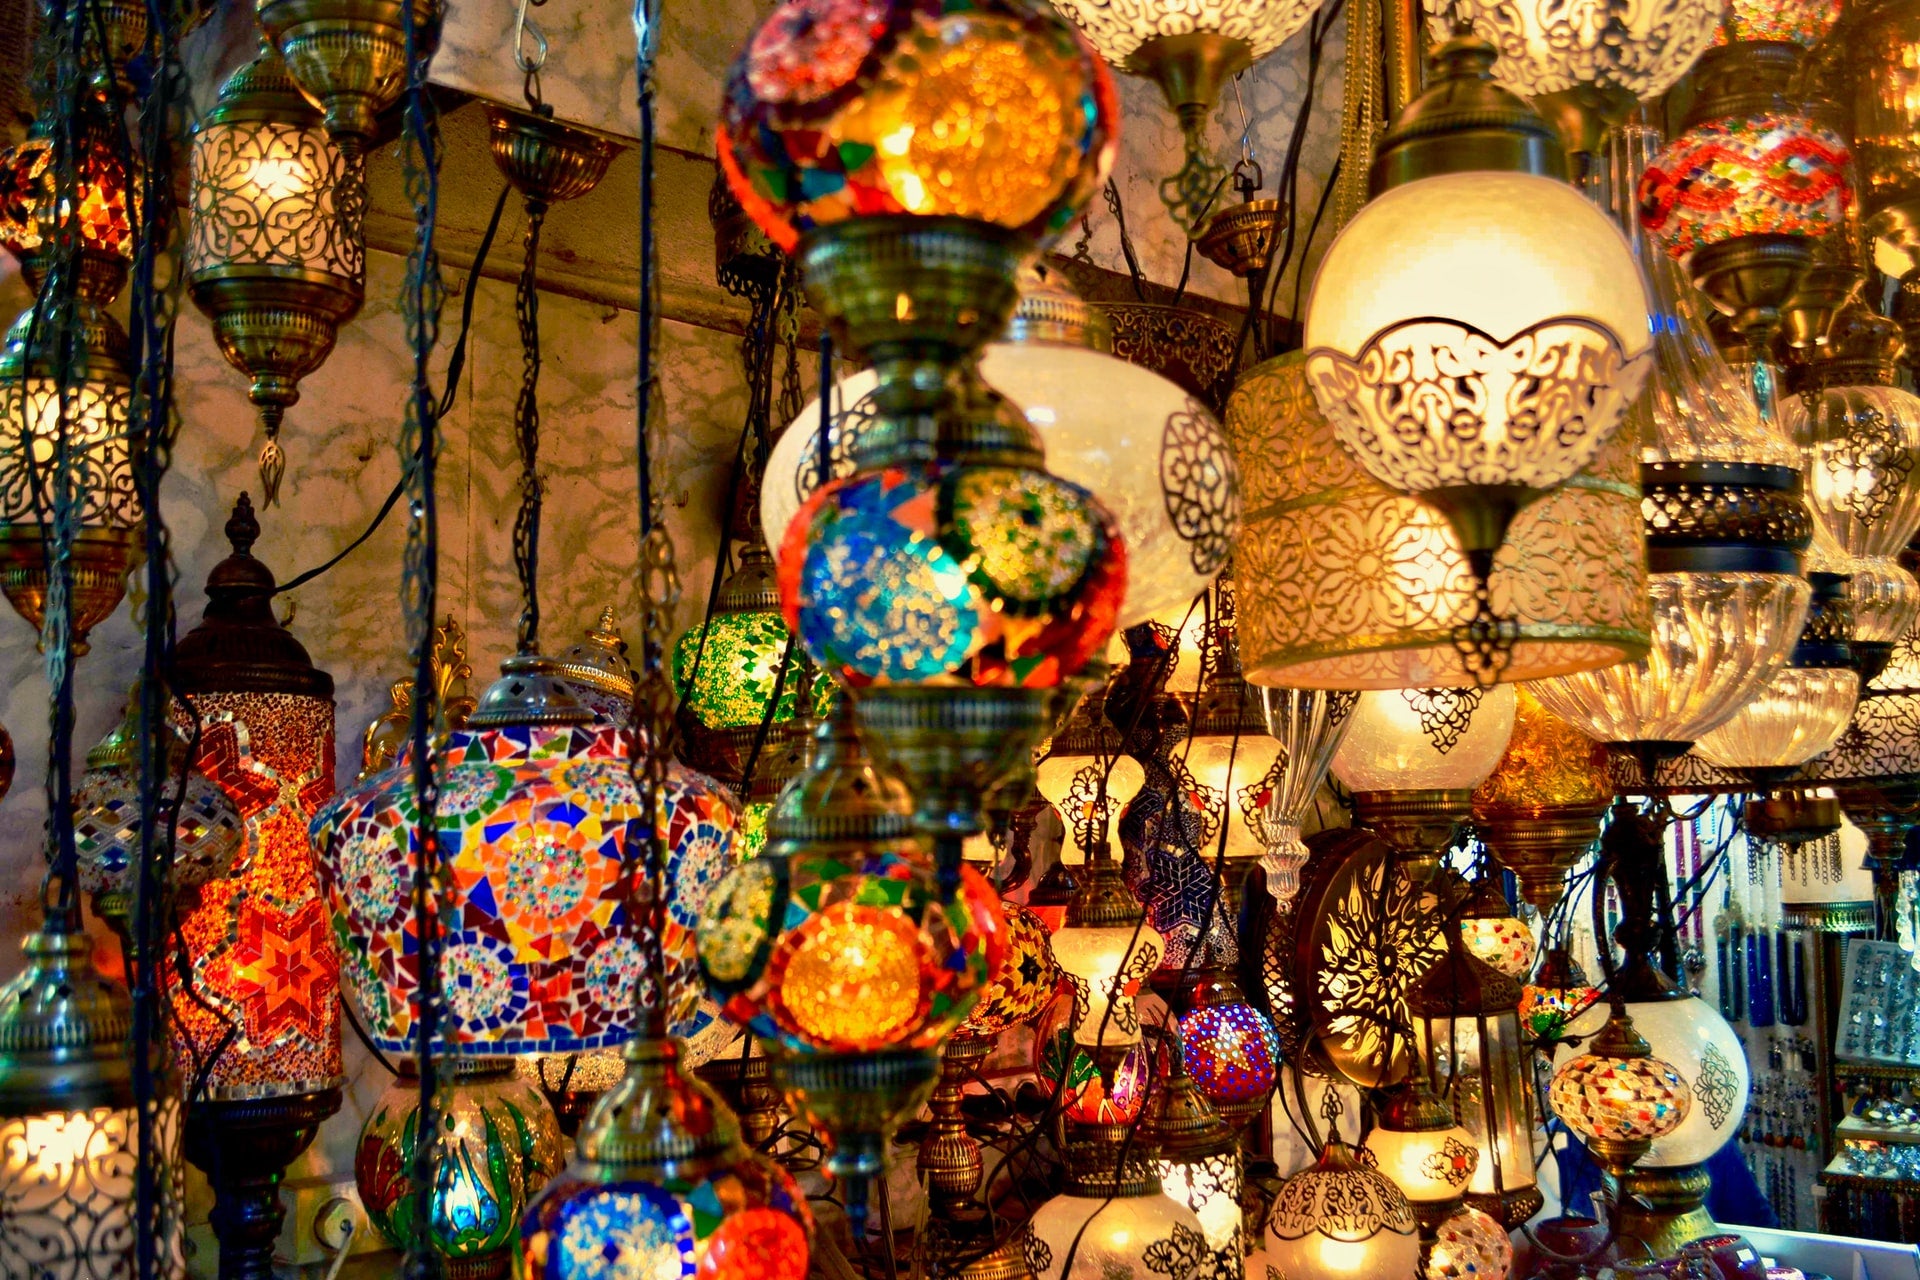 MOSAIC TURKISH LAMPS